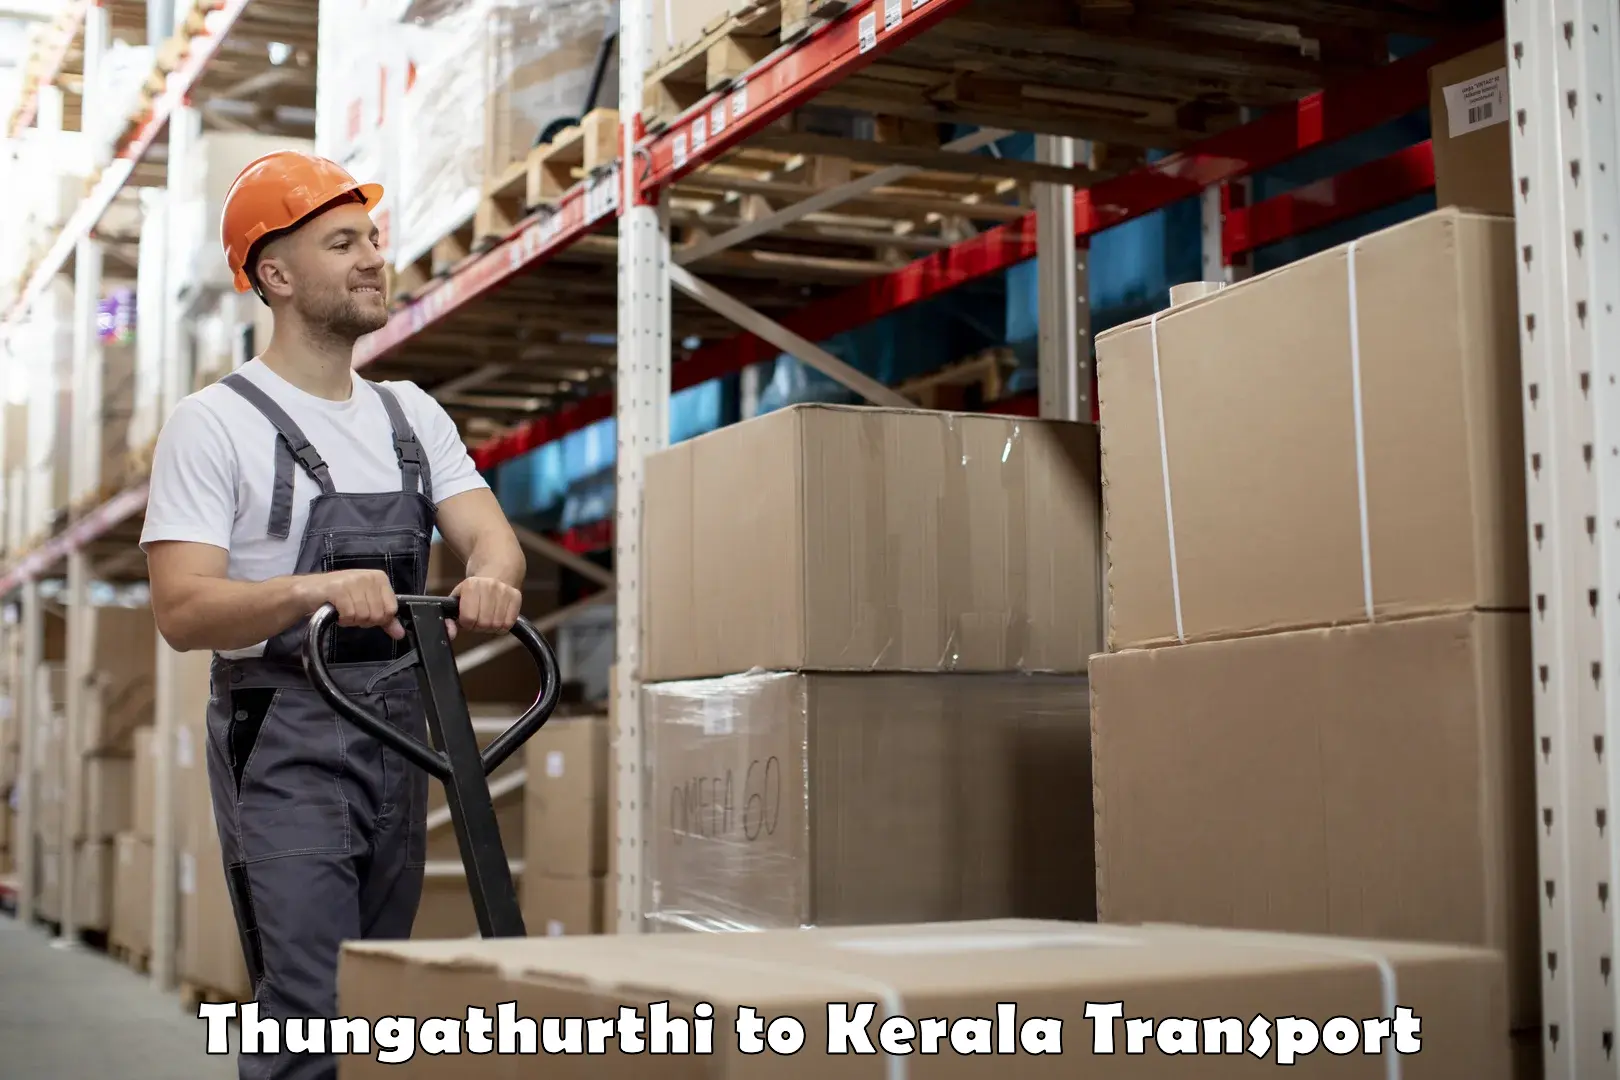 Furniture transport service Thungathurthi to Mananthavady